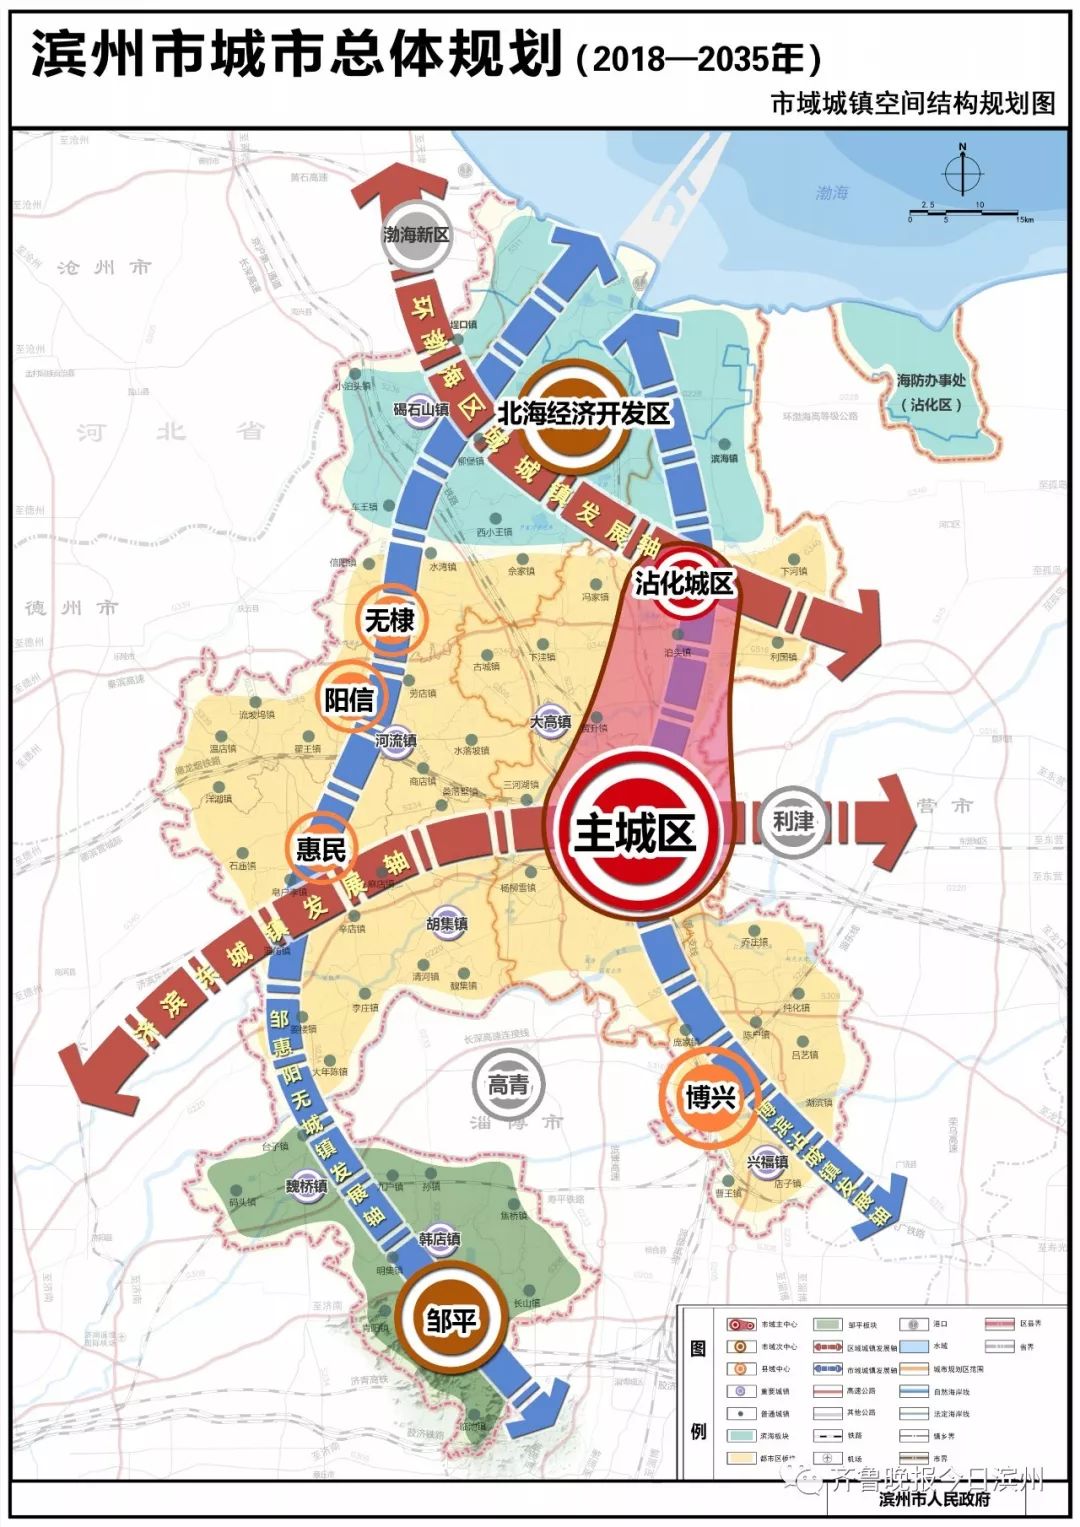 滨州市城市总体规划(2018-2035年)